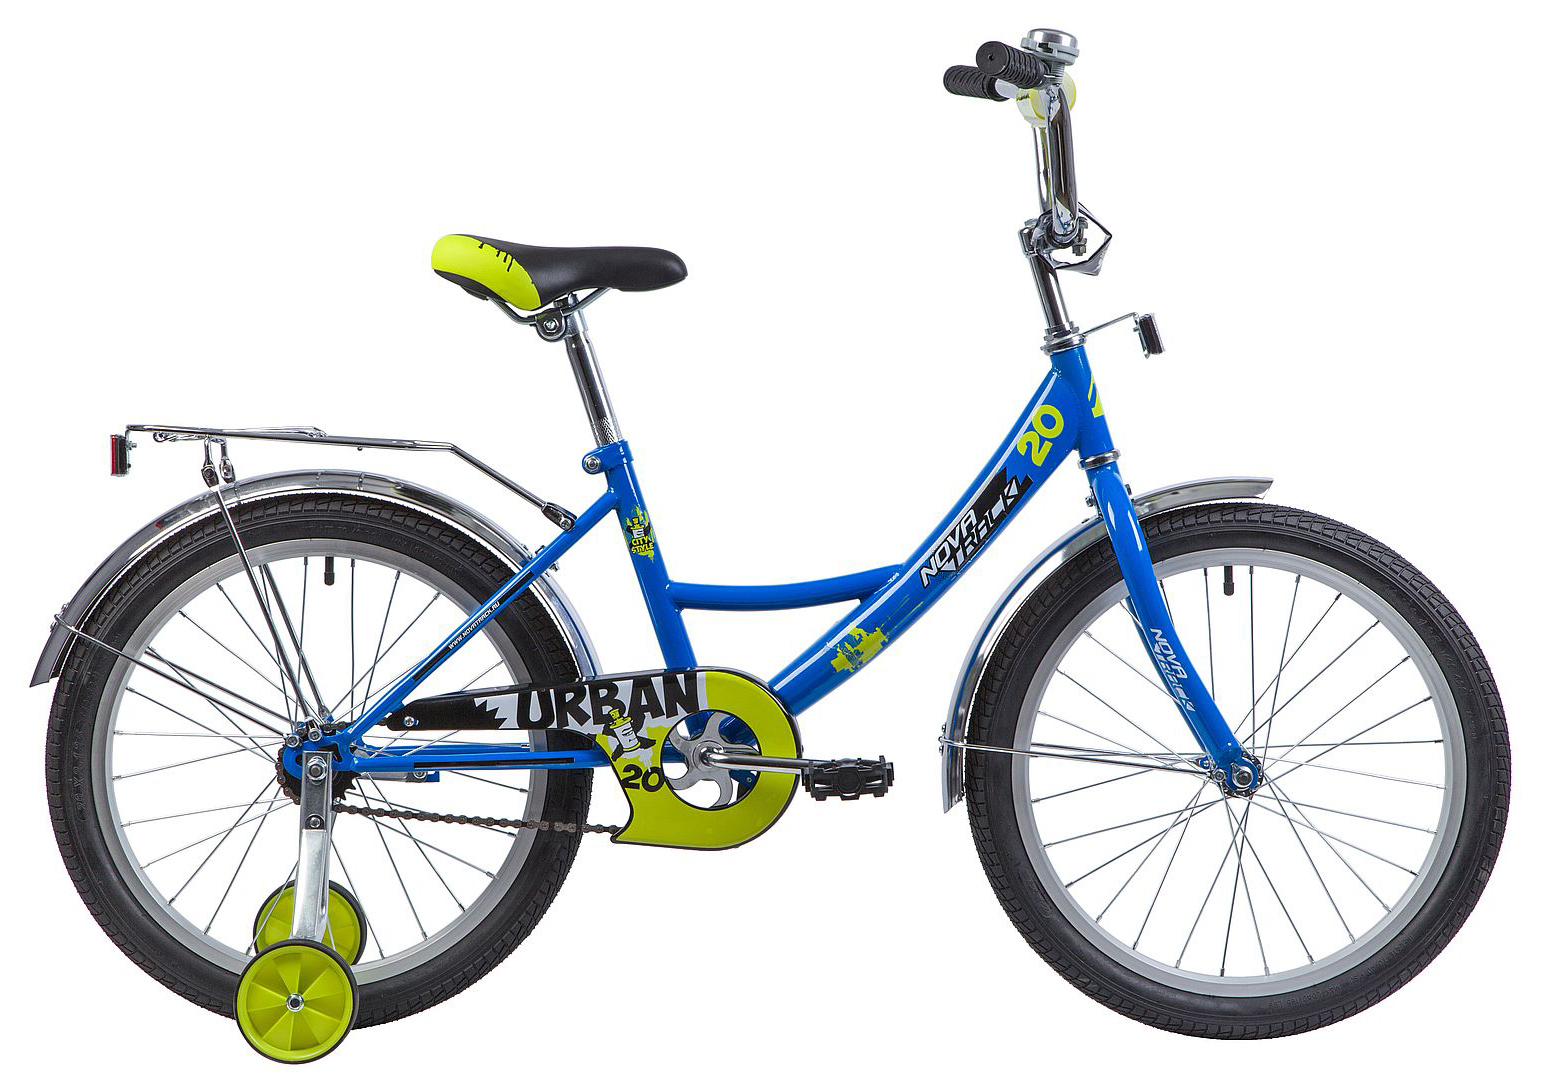  Отзывы о Детском велосипеде Novatrack Urban 20 2019